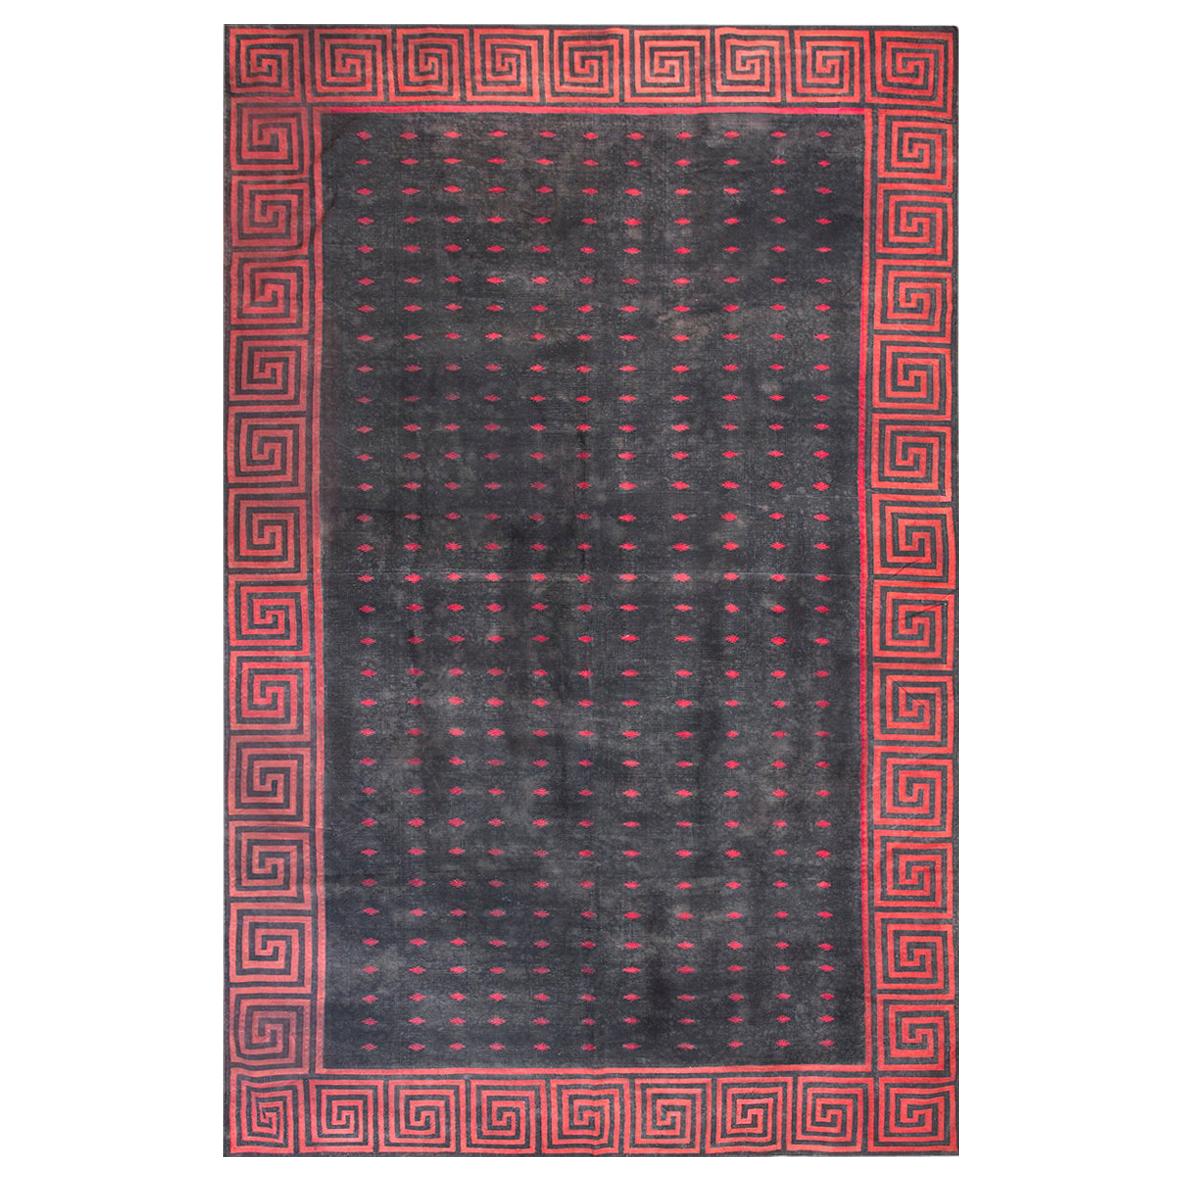 Indischer Dhurrie-Teppich aus Baumwolle des frühen 20. Jahrhunderts ( 8'3" X 12'9" - 252 X 388)